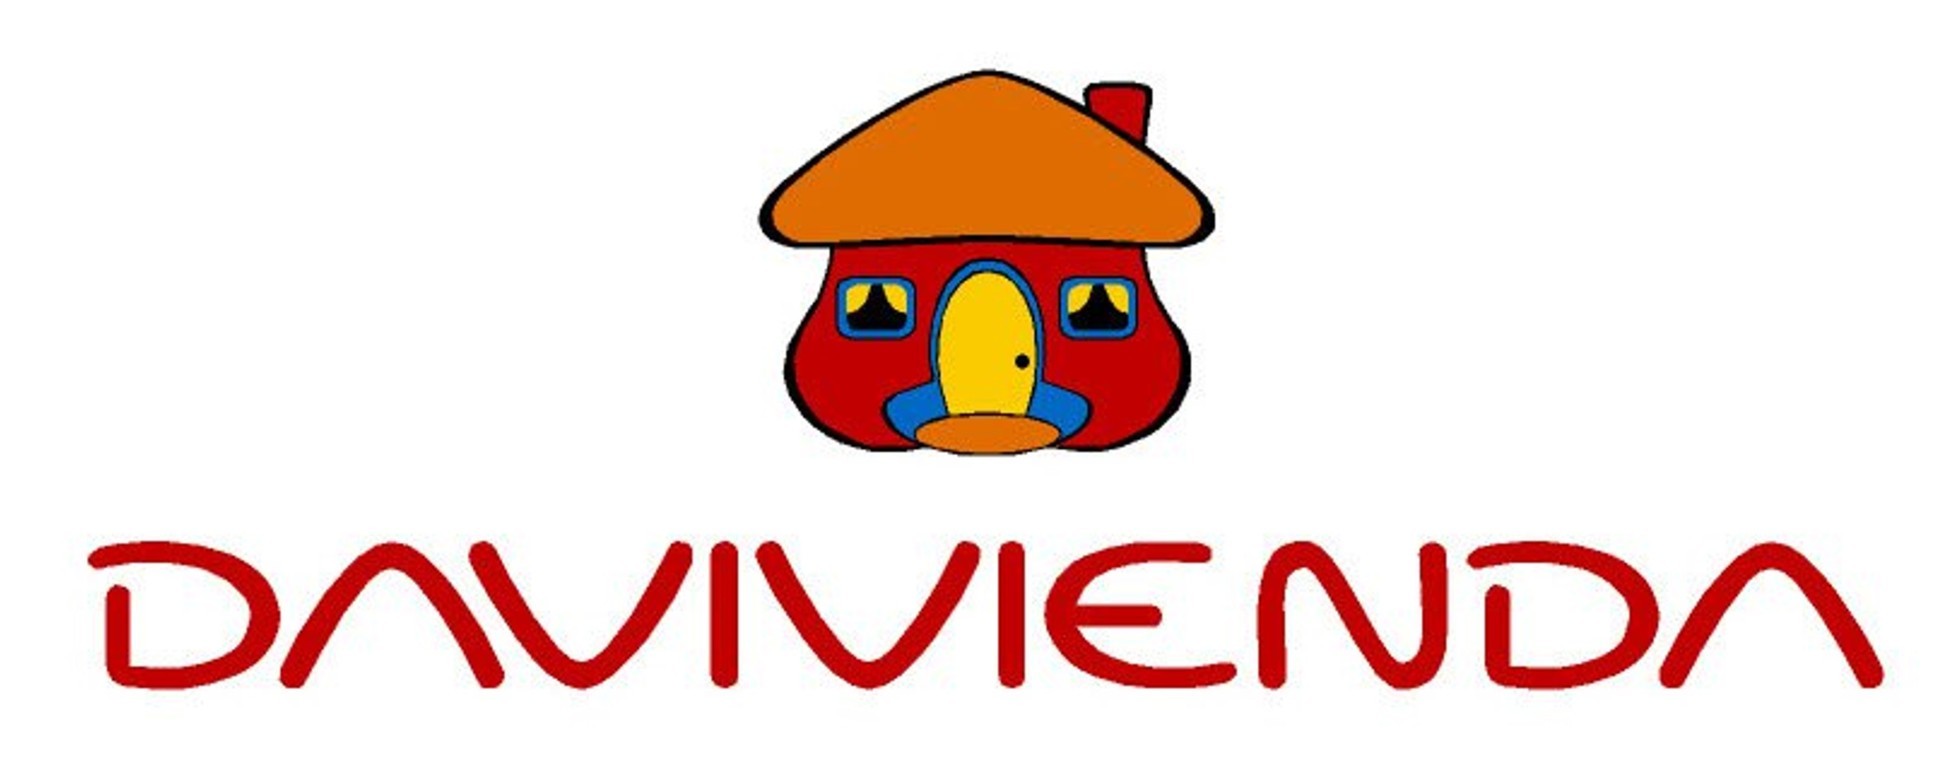 Davivienda Brand Logo